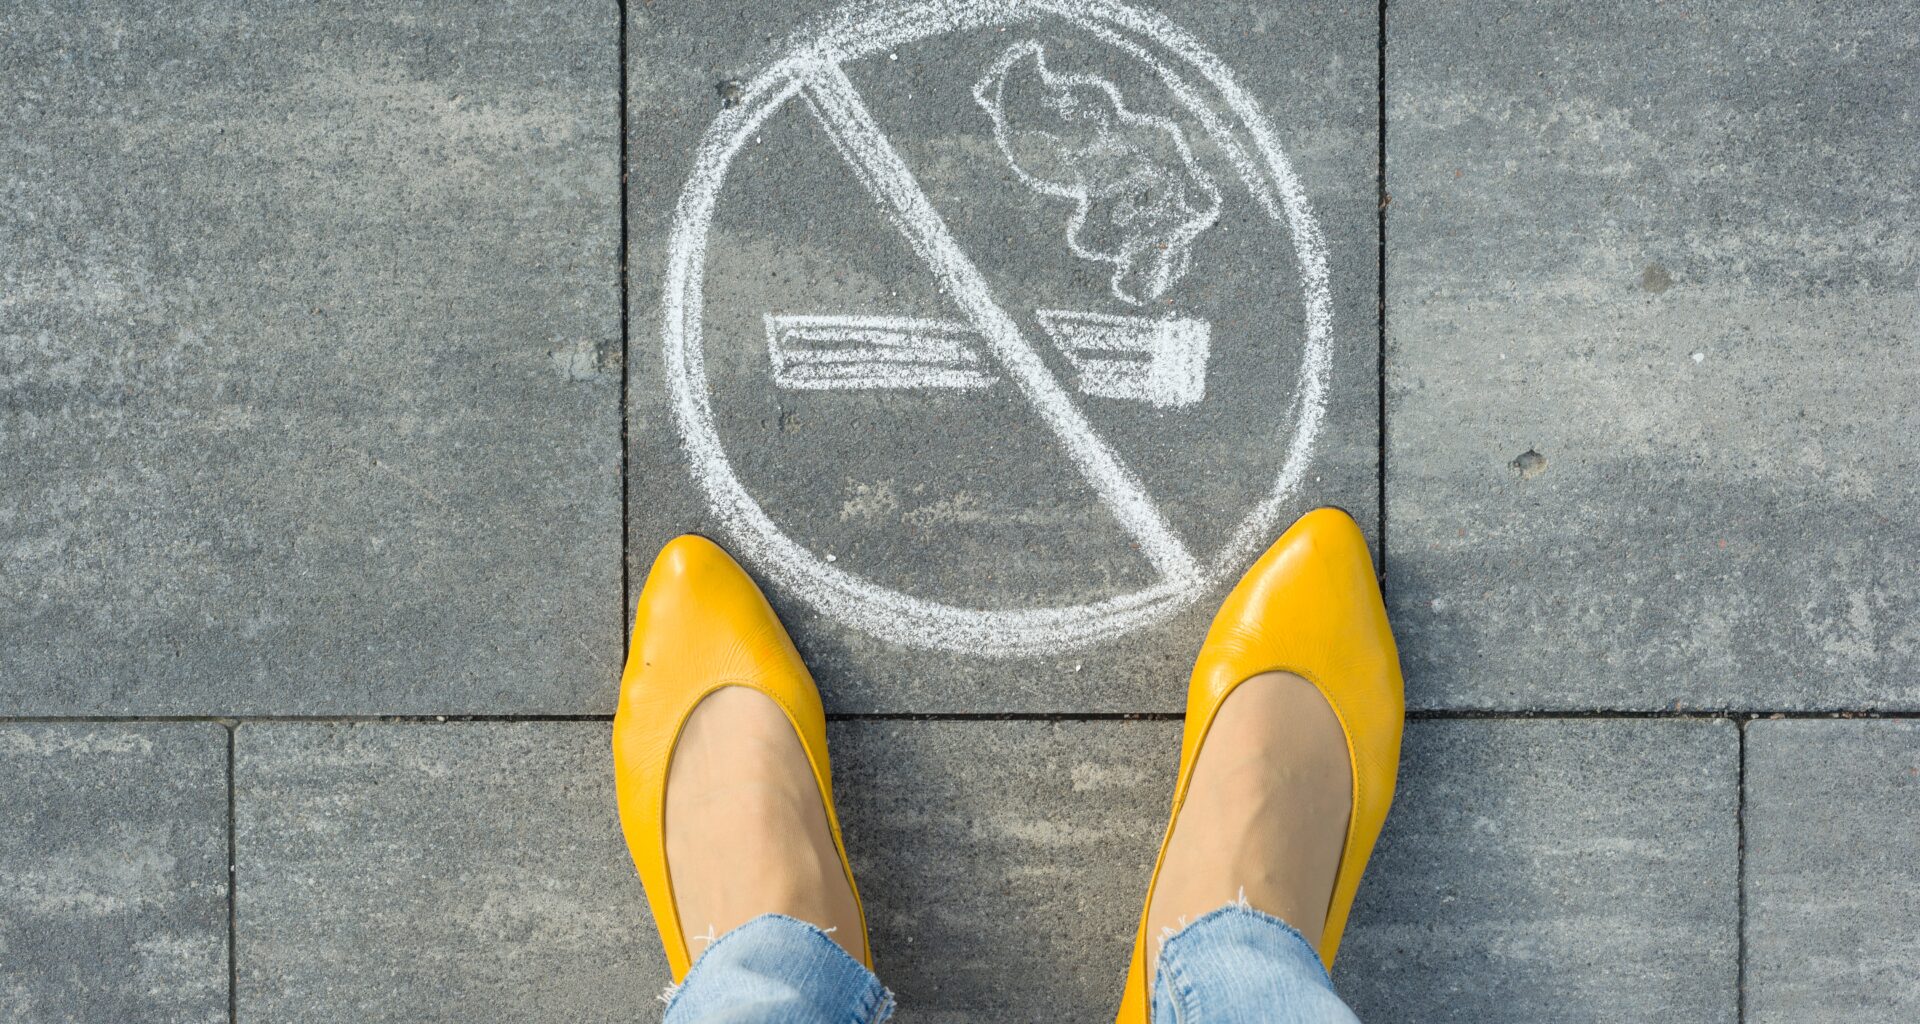 Prohibido fumar: entra en vigor la Ley General para el Control del Tabaco